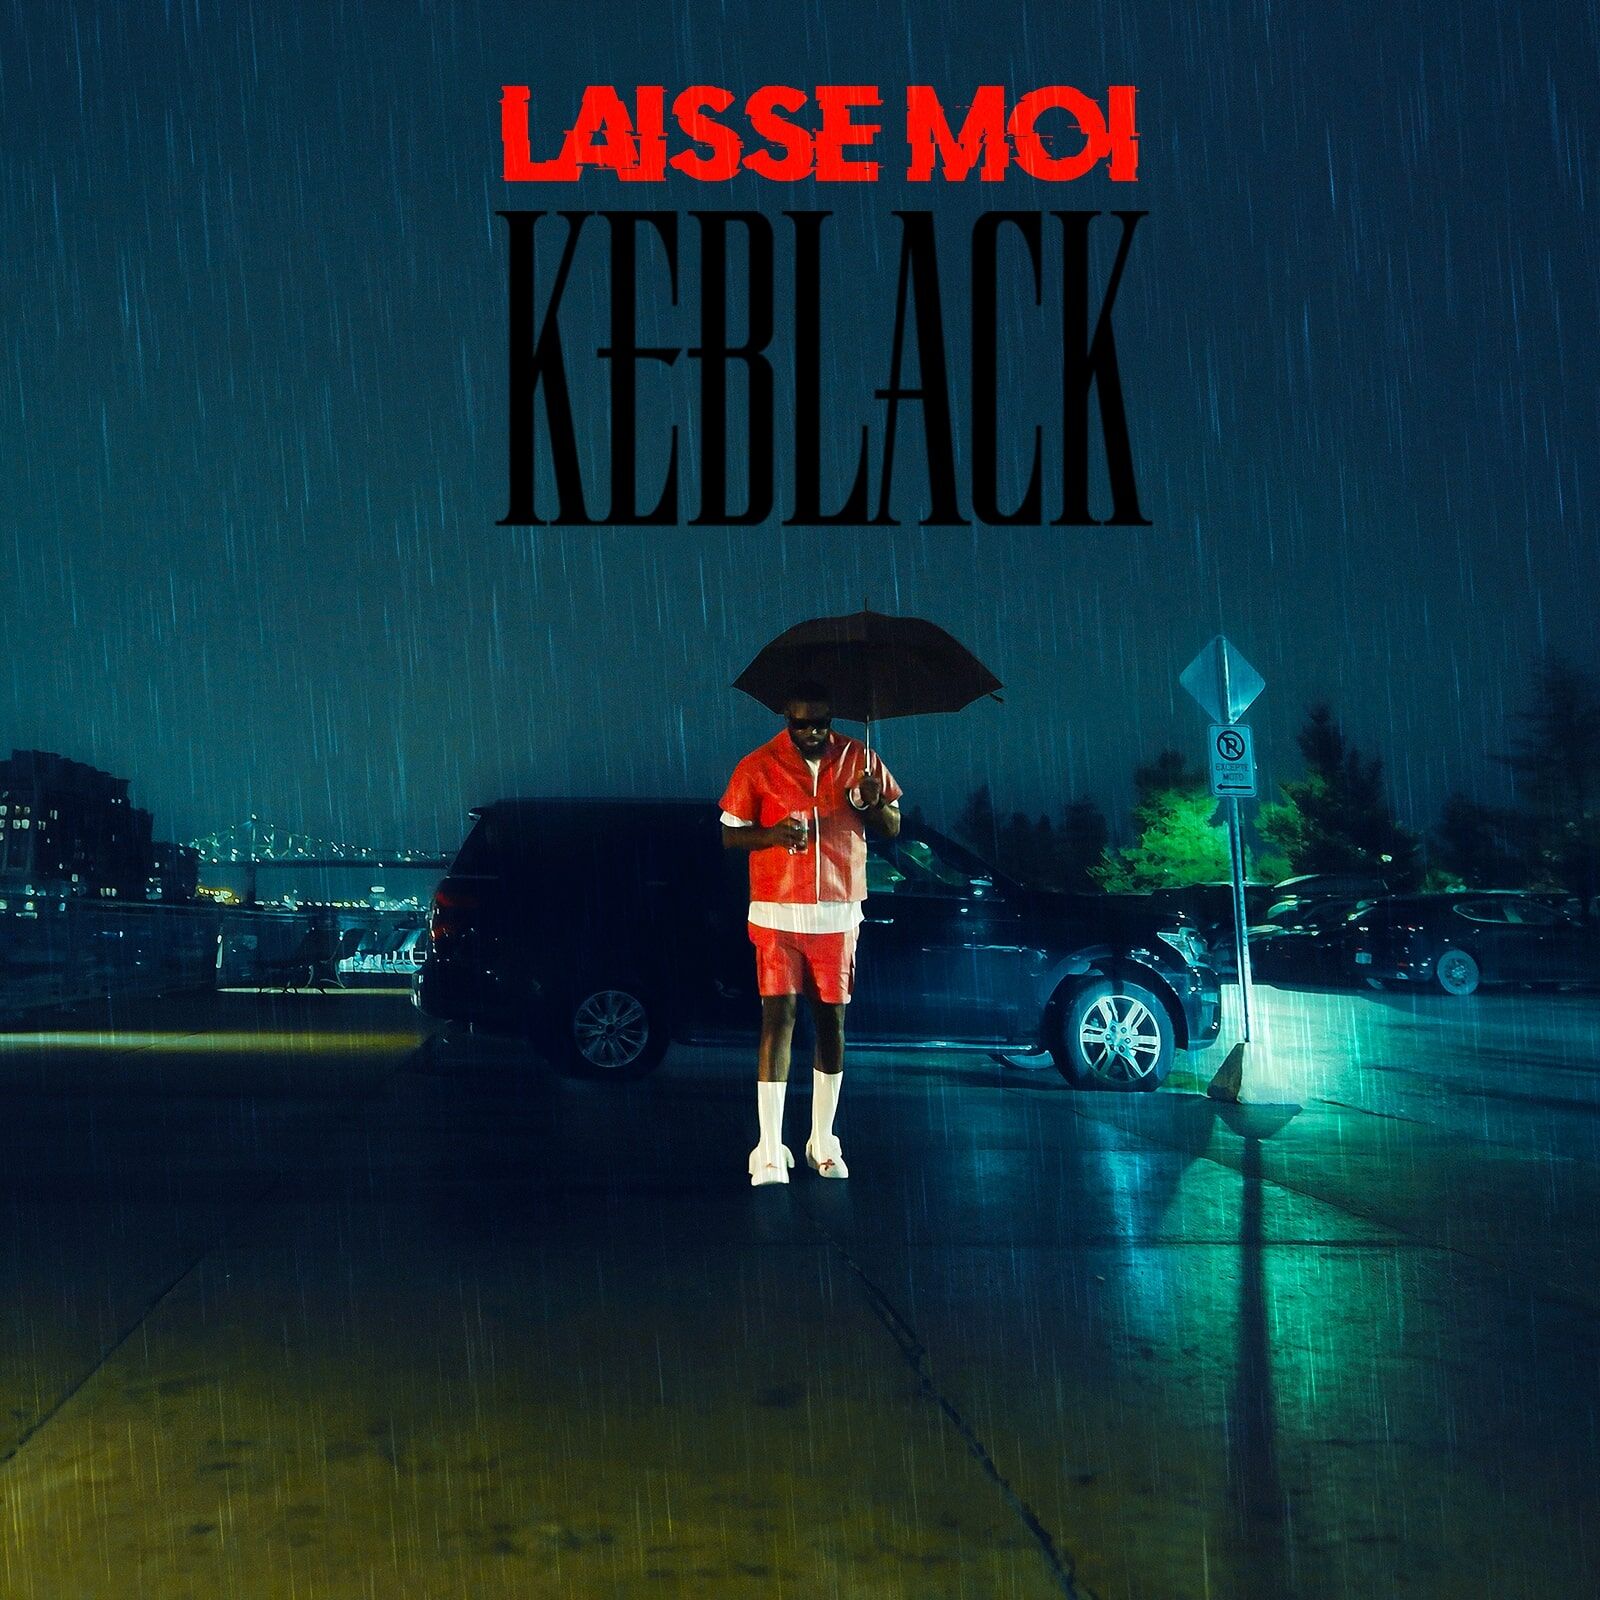 KEBLACK - LAISSE MOI